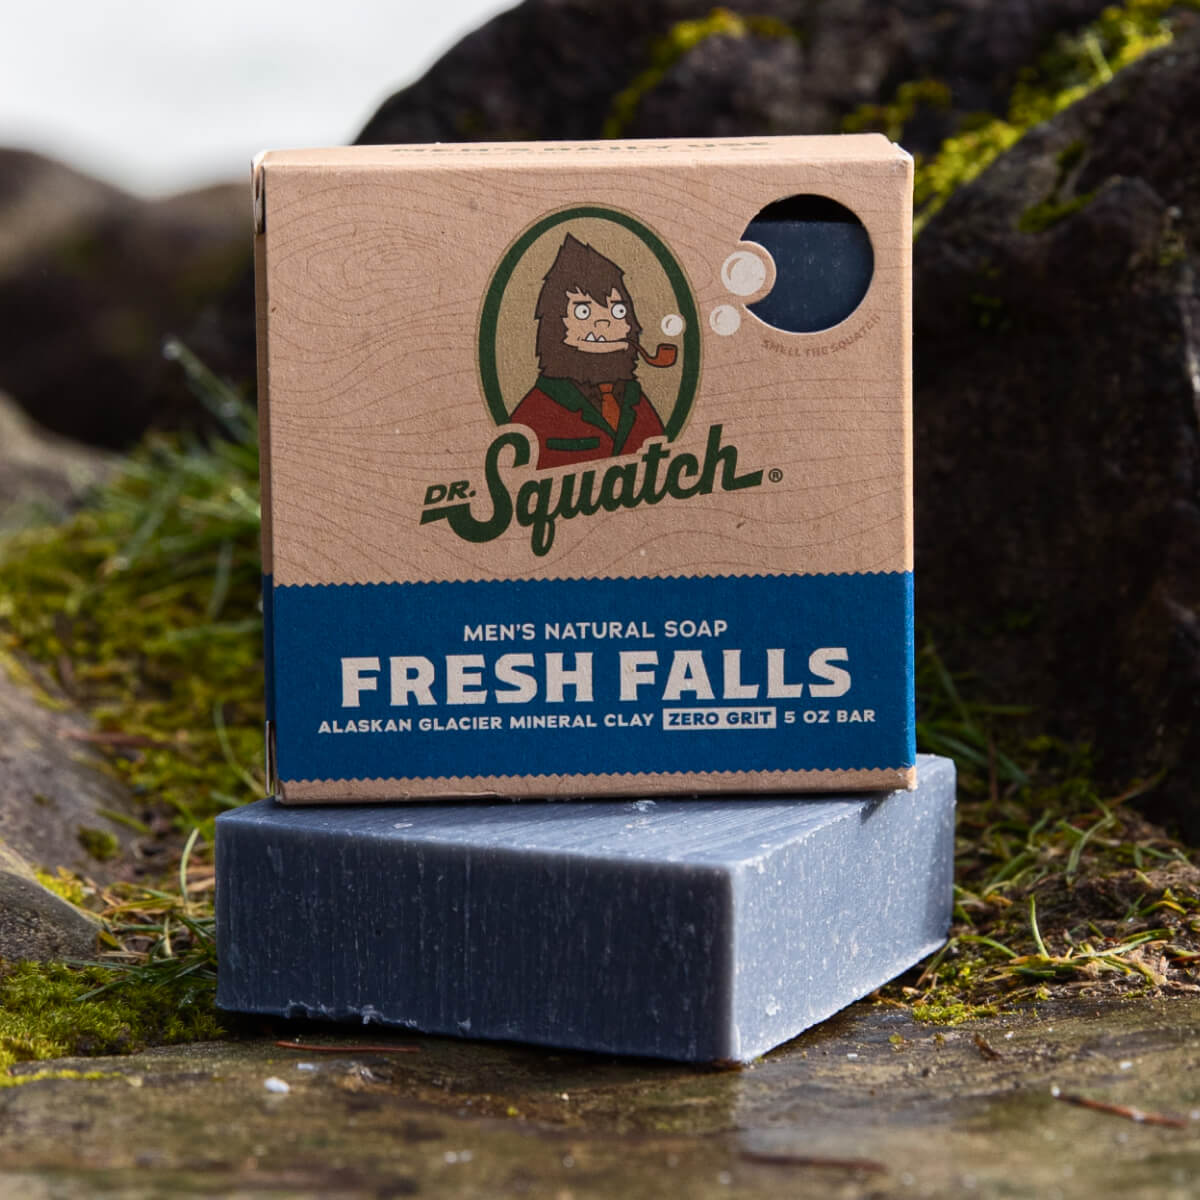 Dr. Squatch Men's Natural Soap Fresh Falls 5oz Bar